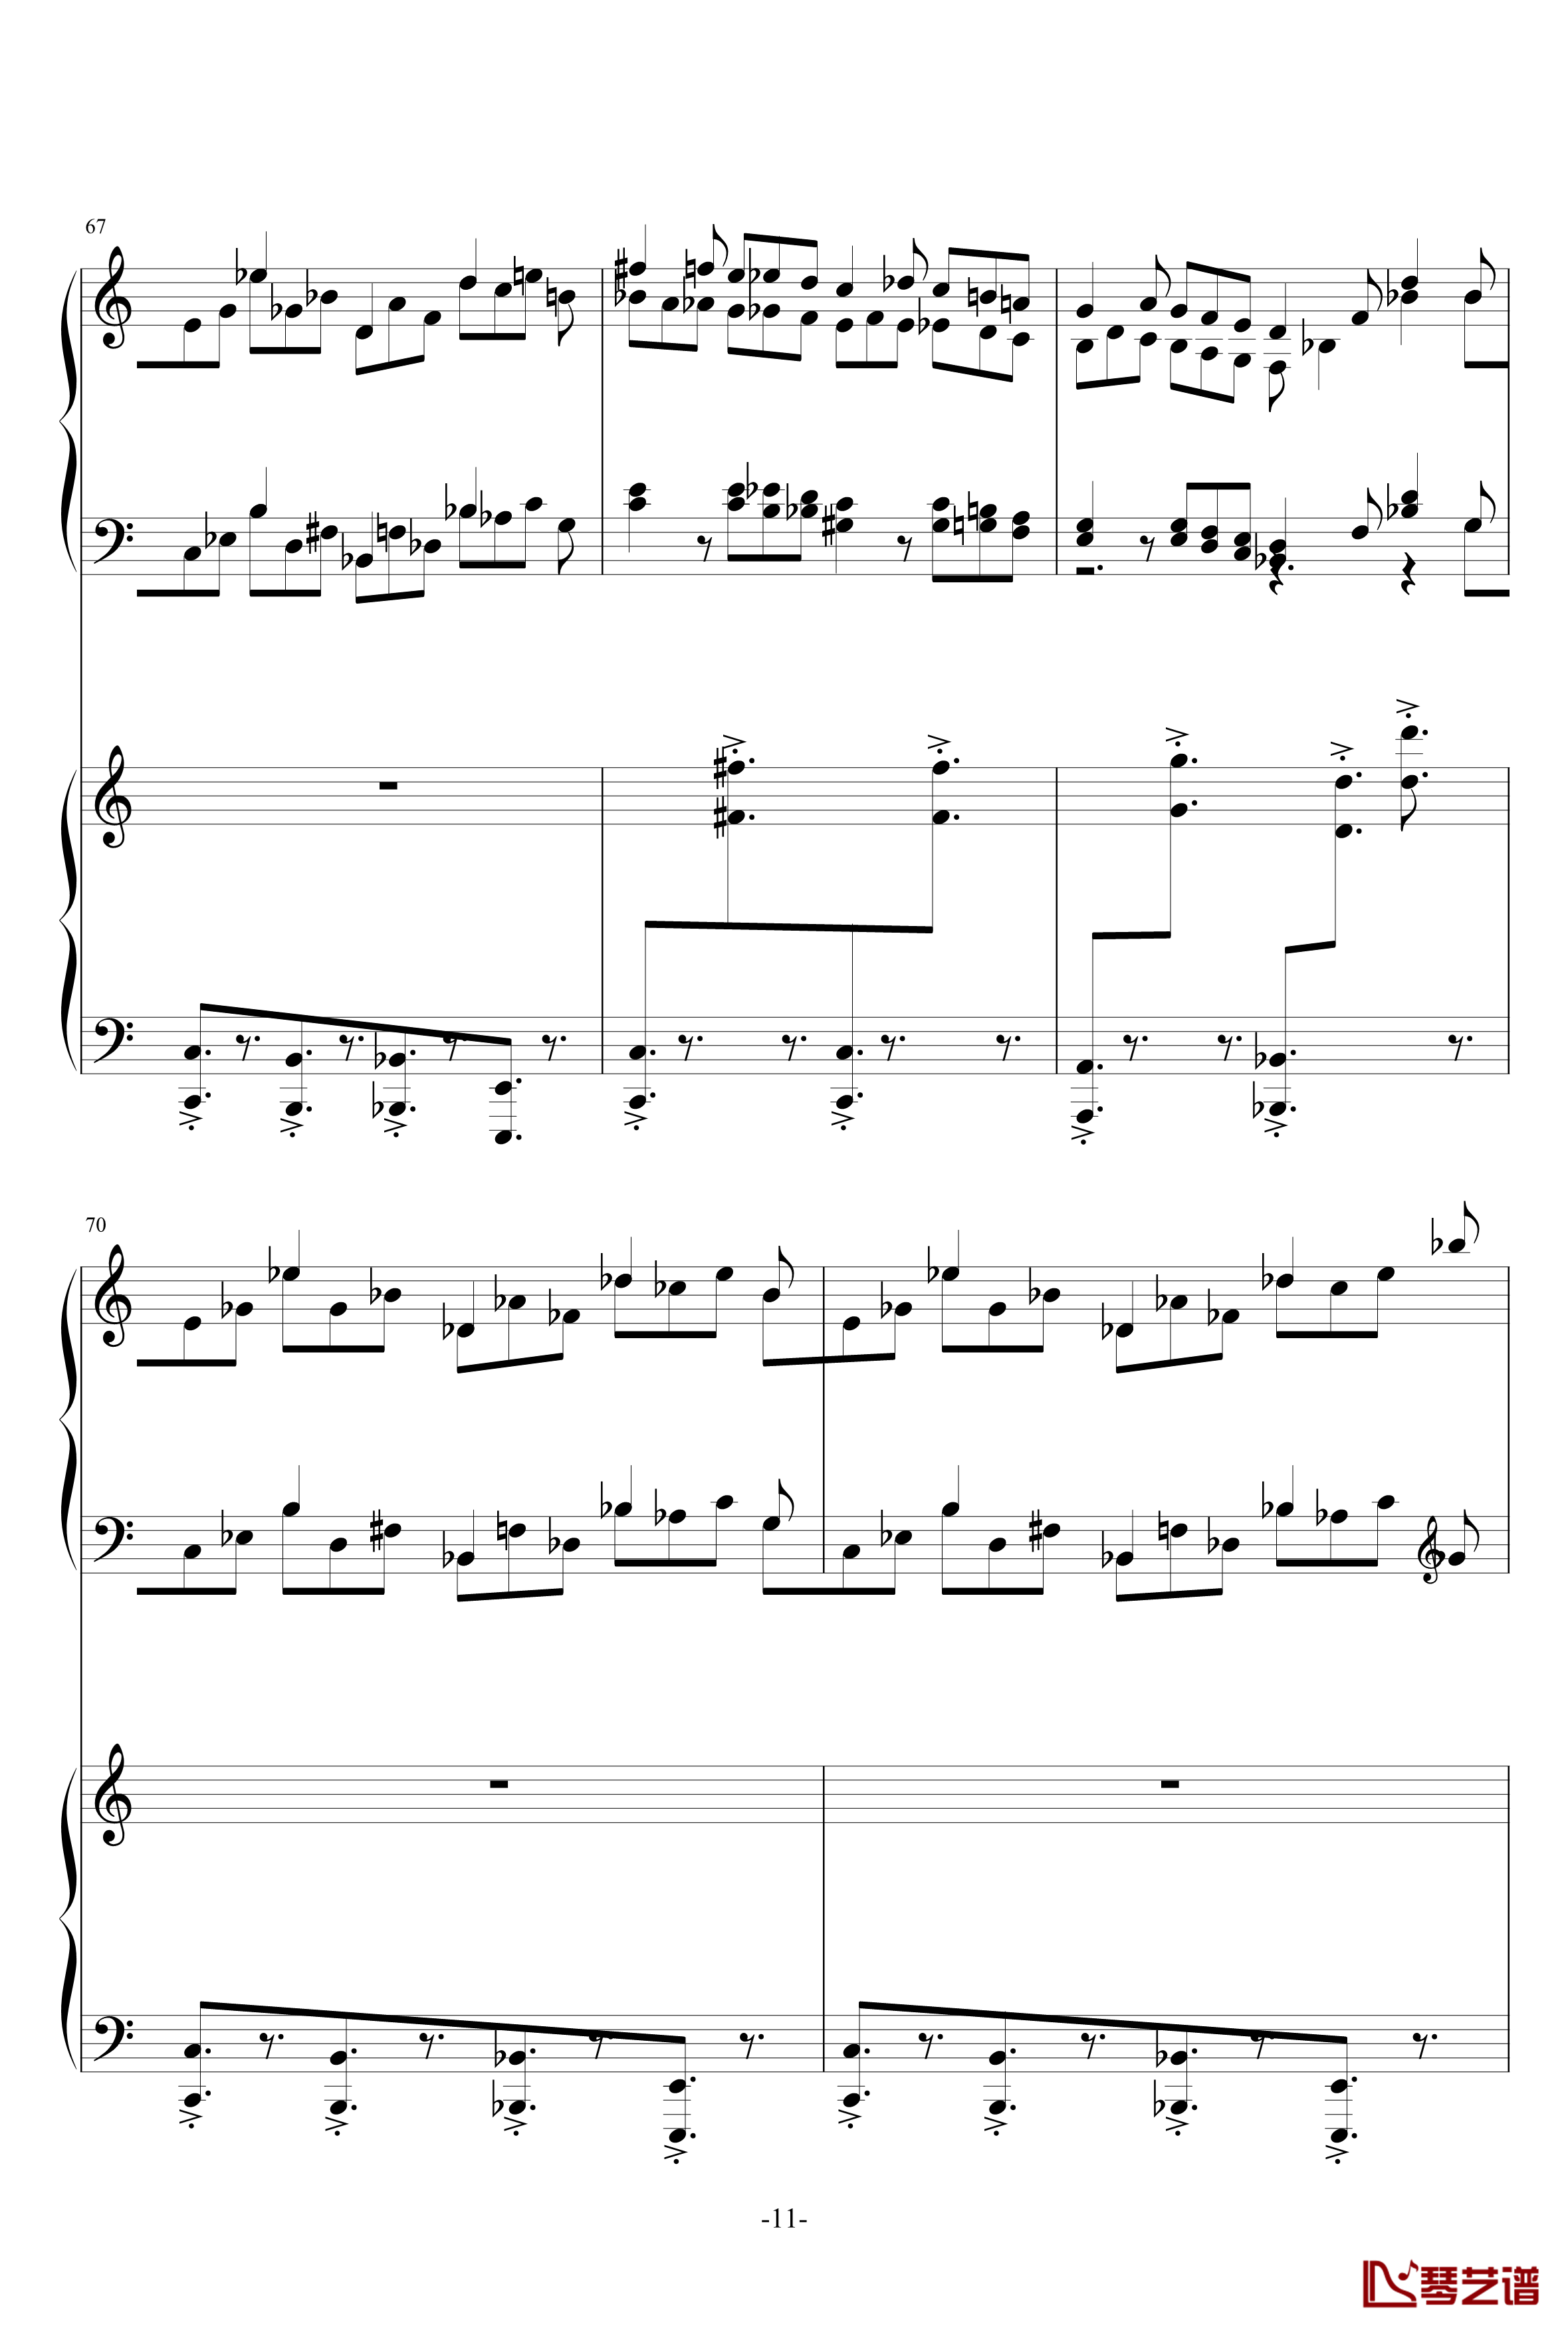 普罗科菲耶夫第三钢琴协奏曲第二乐章钢琴谱11